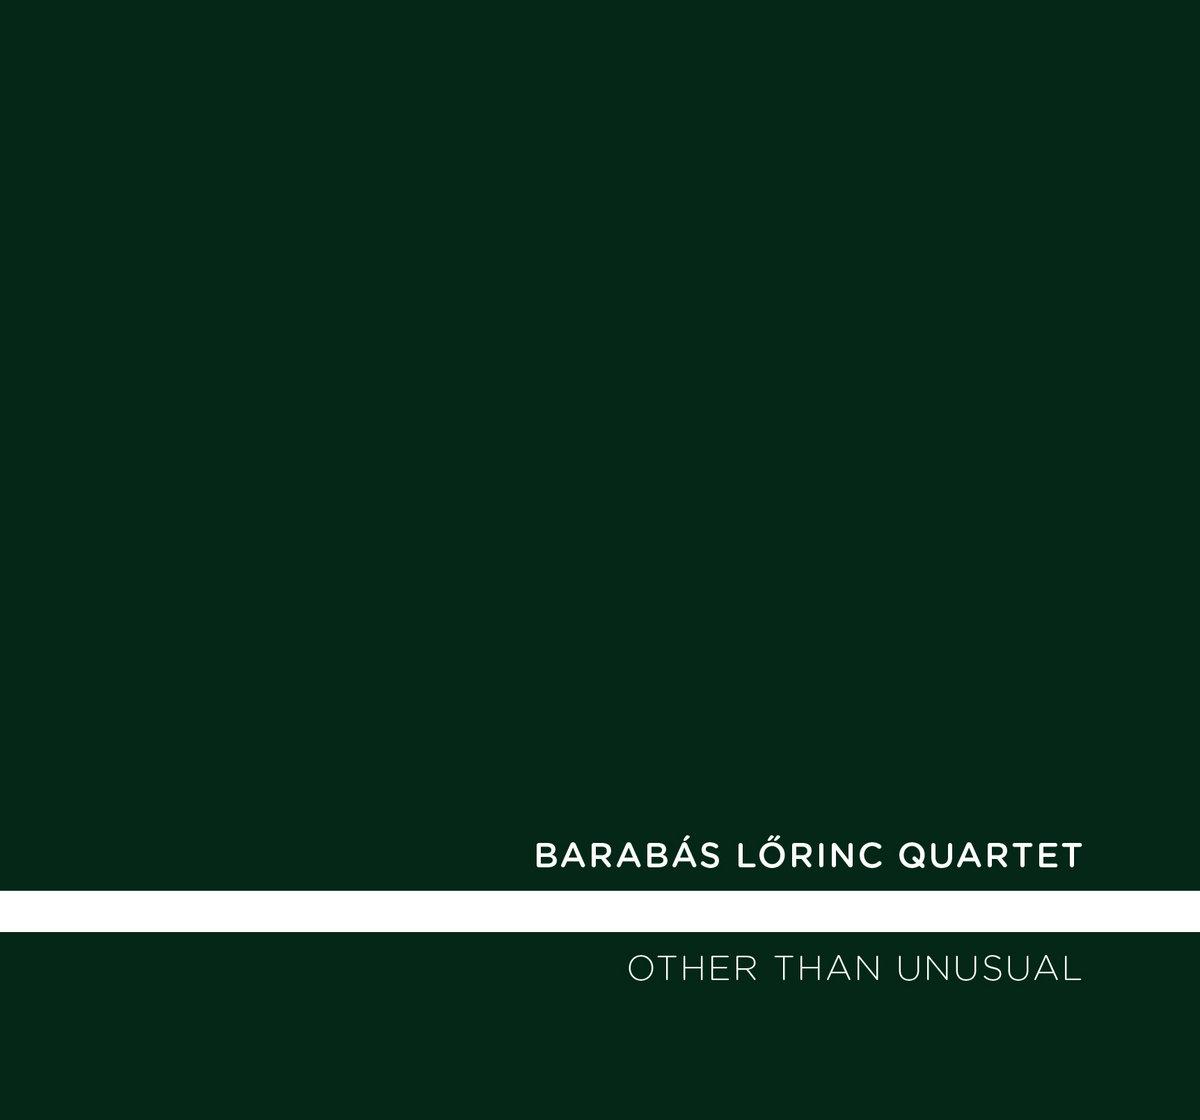 Barabás Lőrinc Quartet: Other Than Unusual